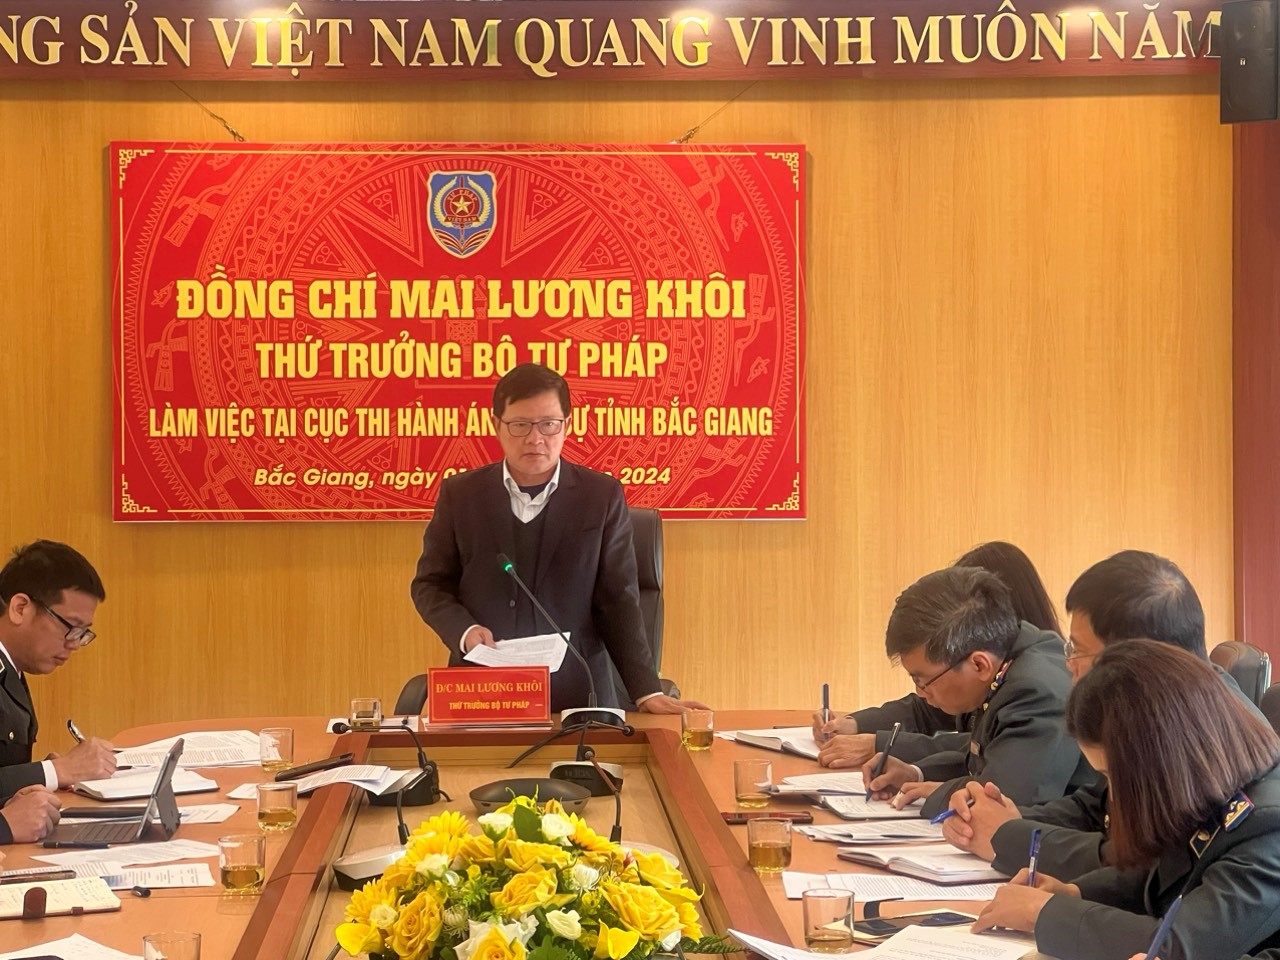 Đồng chí Mai Lương Khôi - Thứ trưởng Bộ Tư pháp làm việc tại Cục Thi hành án dân sự tỉnh Bắc Giang